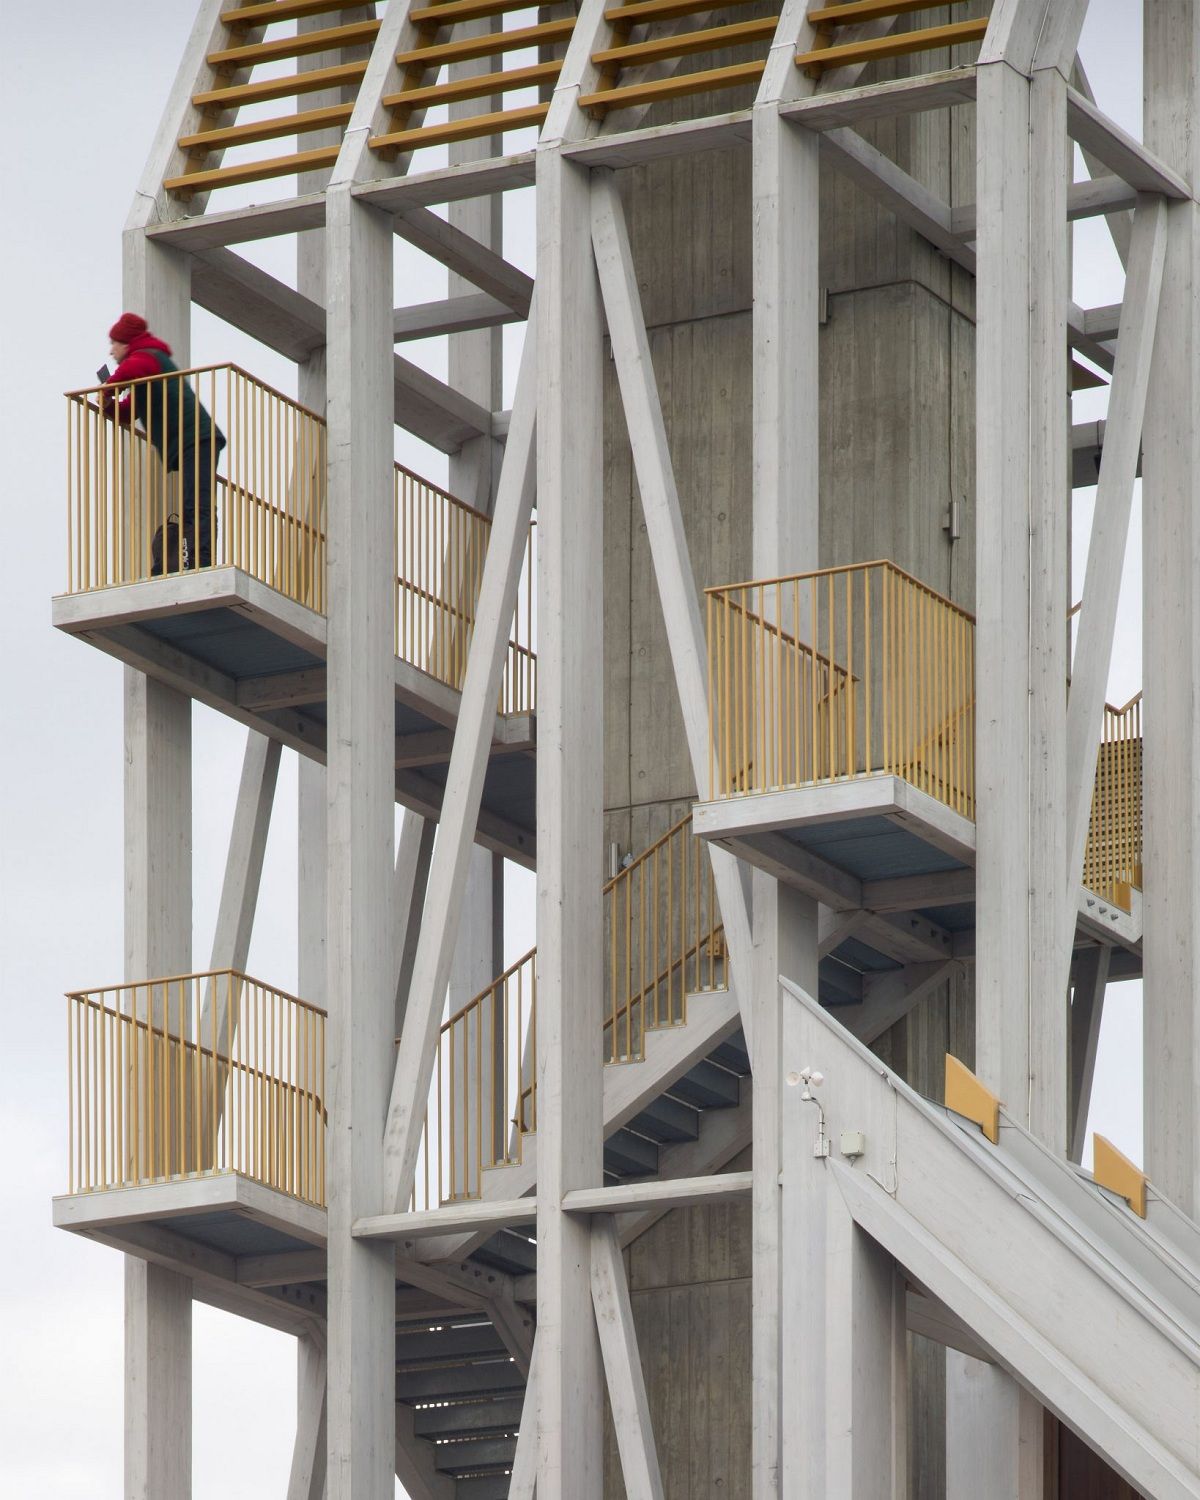 Tòa tháp được xây dựng hầu hết bằng gỗ ép 2 chiều